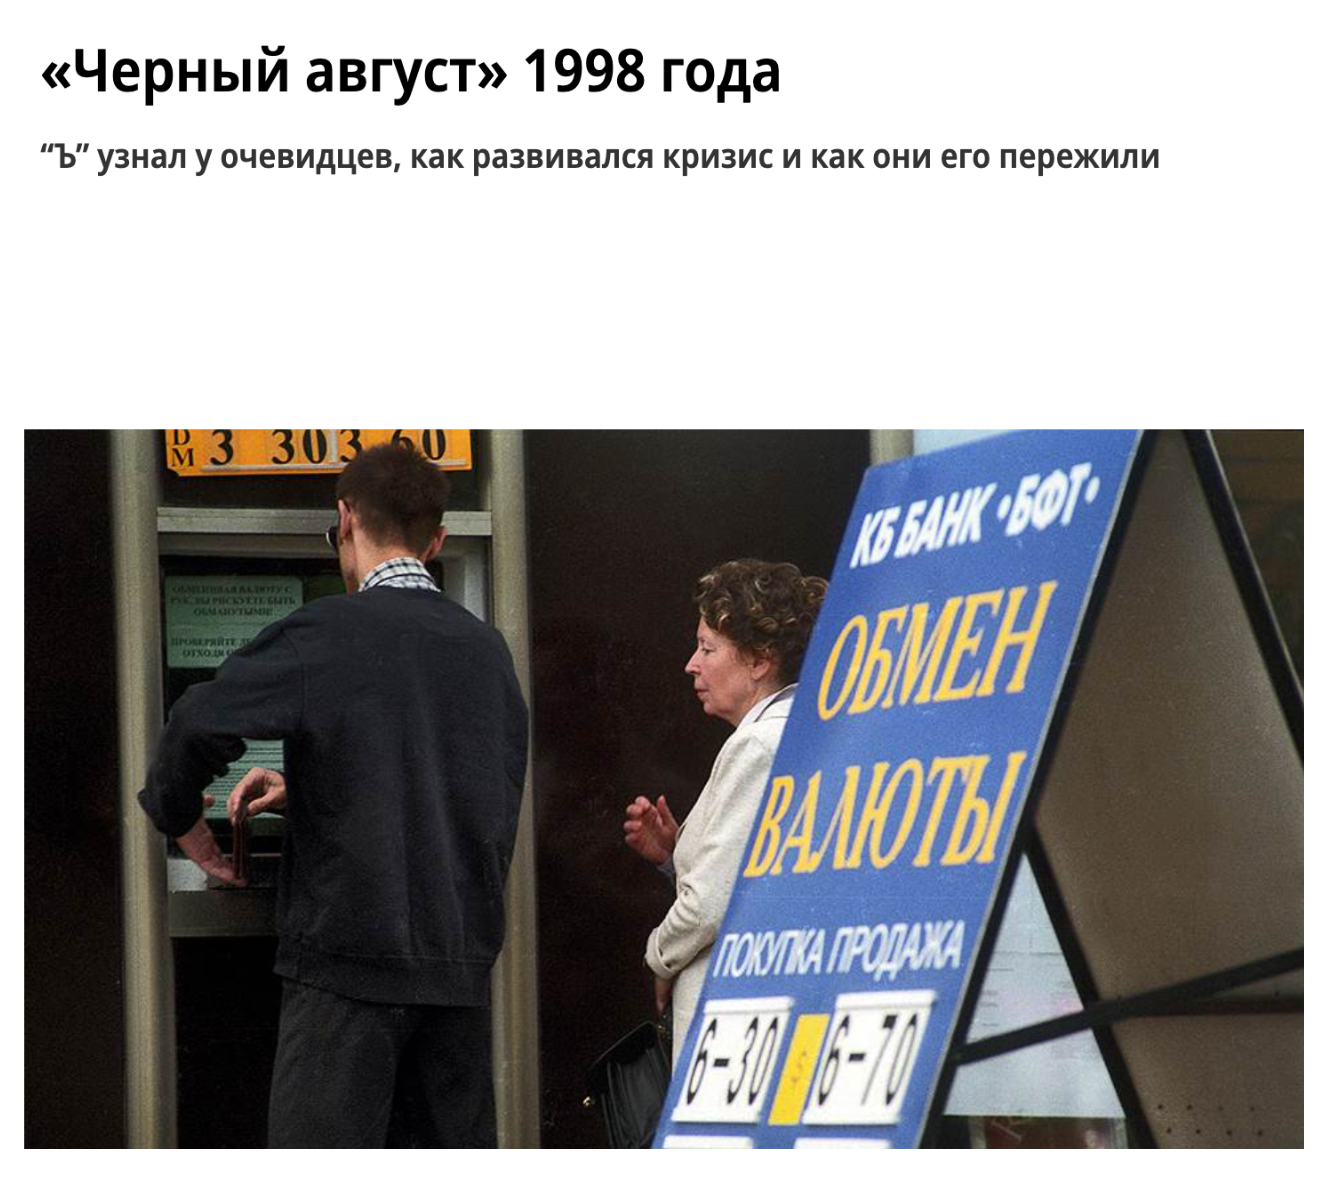 Заголовки российских СМИ. Источник: «Коммерсант»